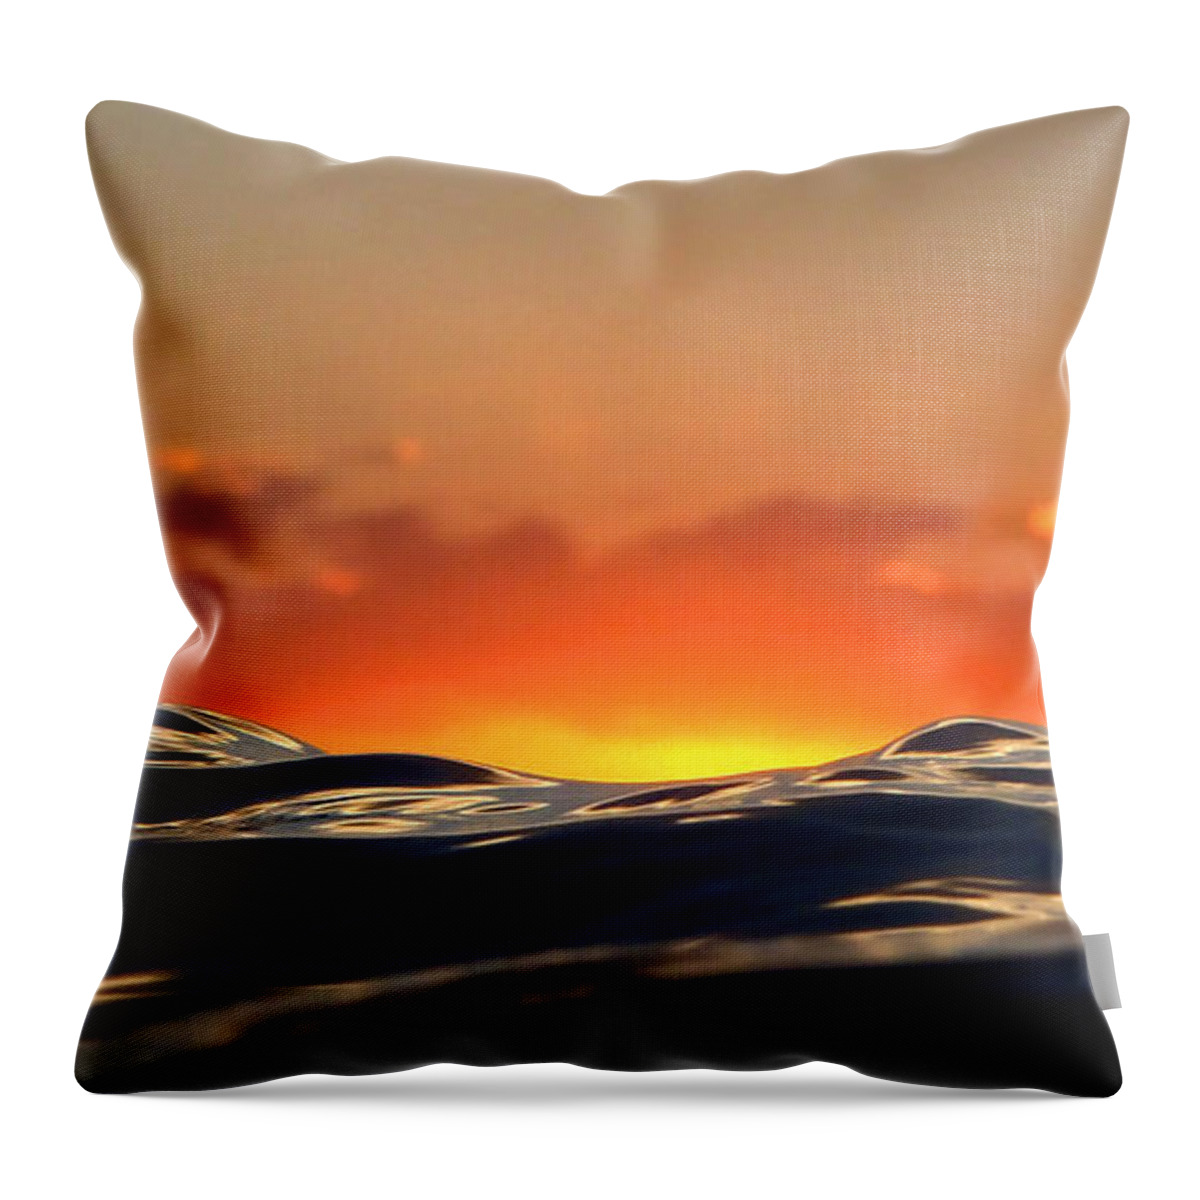 Seascape Throw Pillow featuring the digital art PELE Goddess of Fire by Suzette Kallen